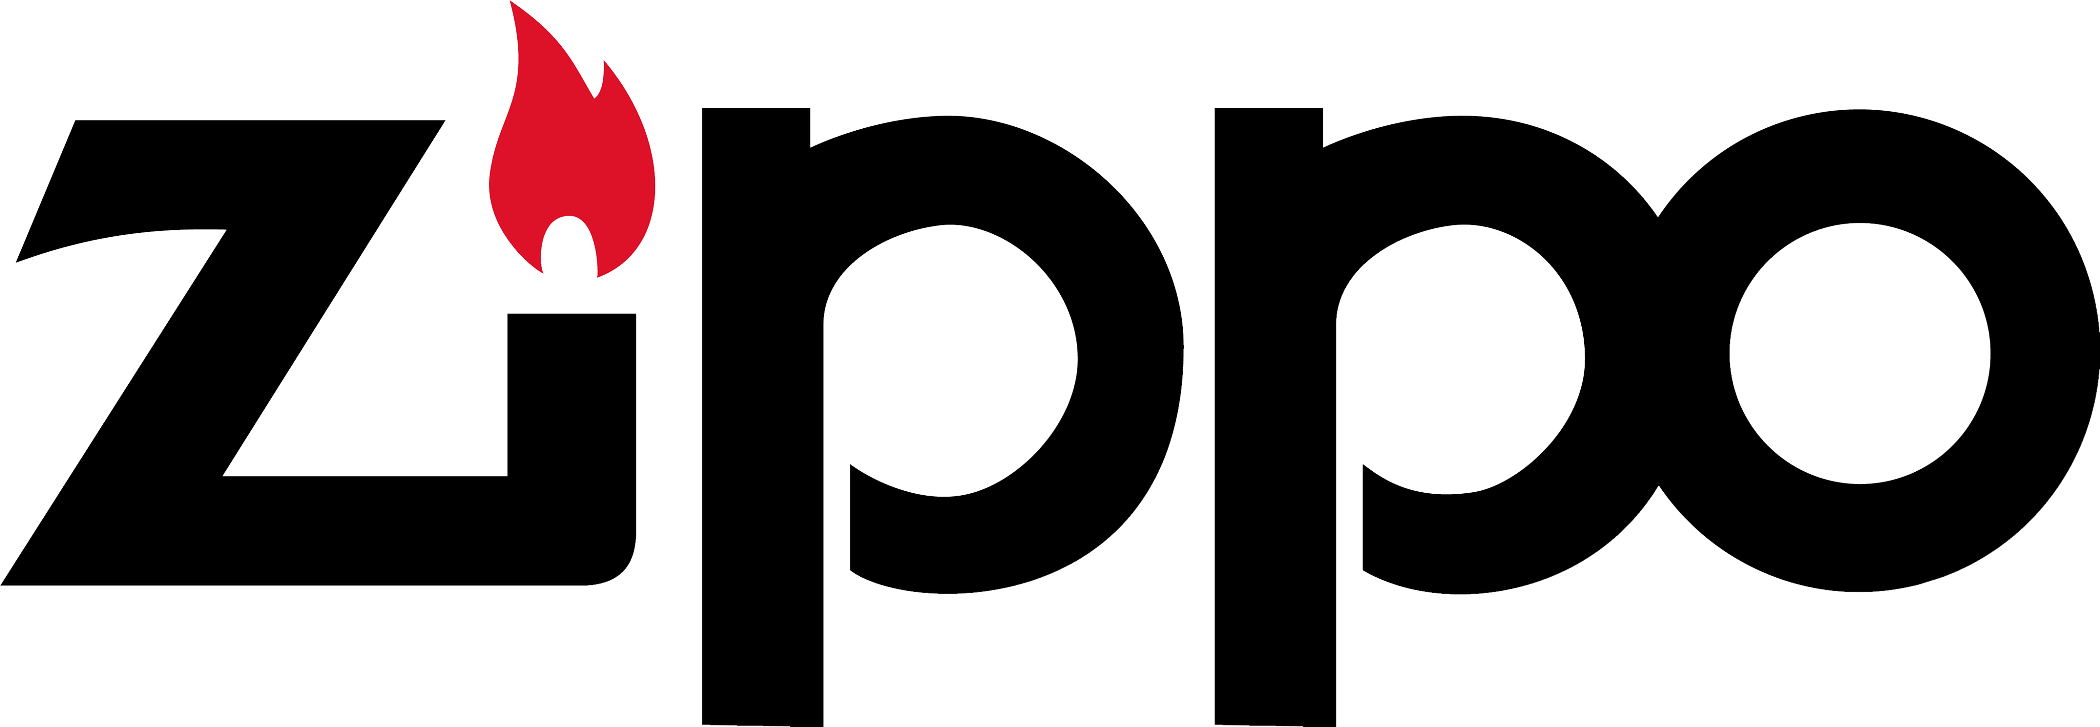 Zippo Logo png